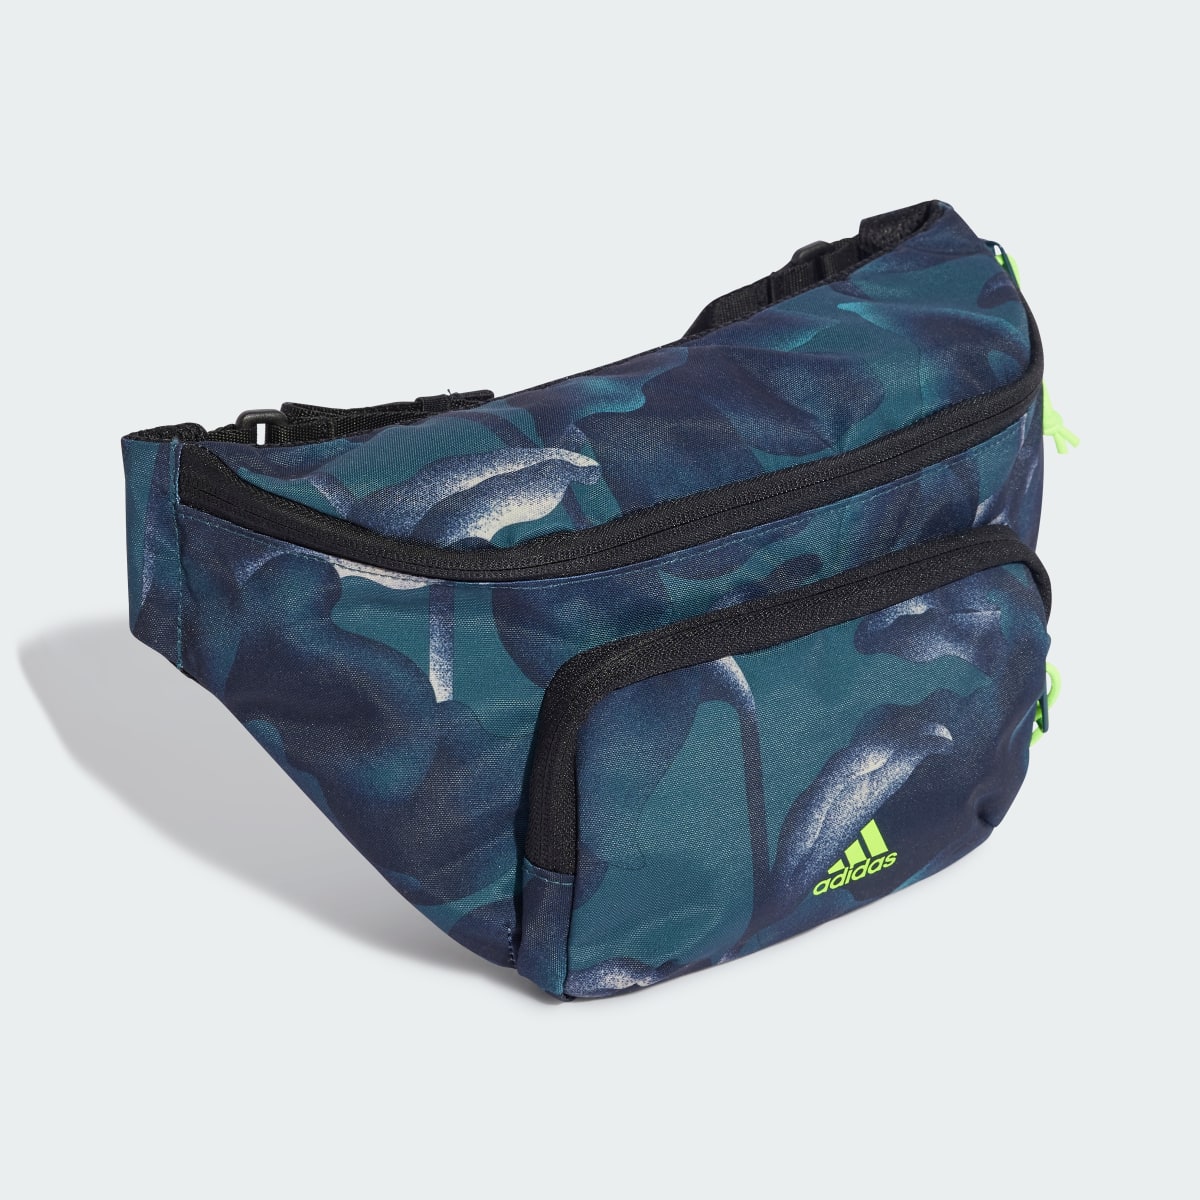 Adidas City Explorer Waist Bag. 4